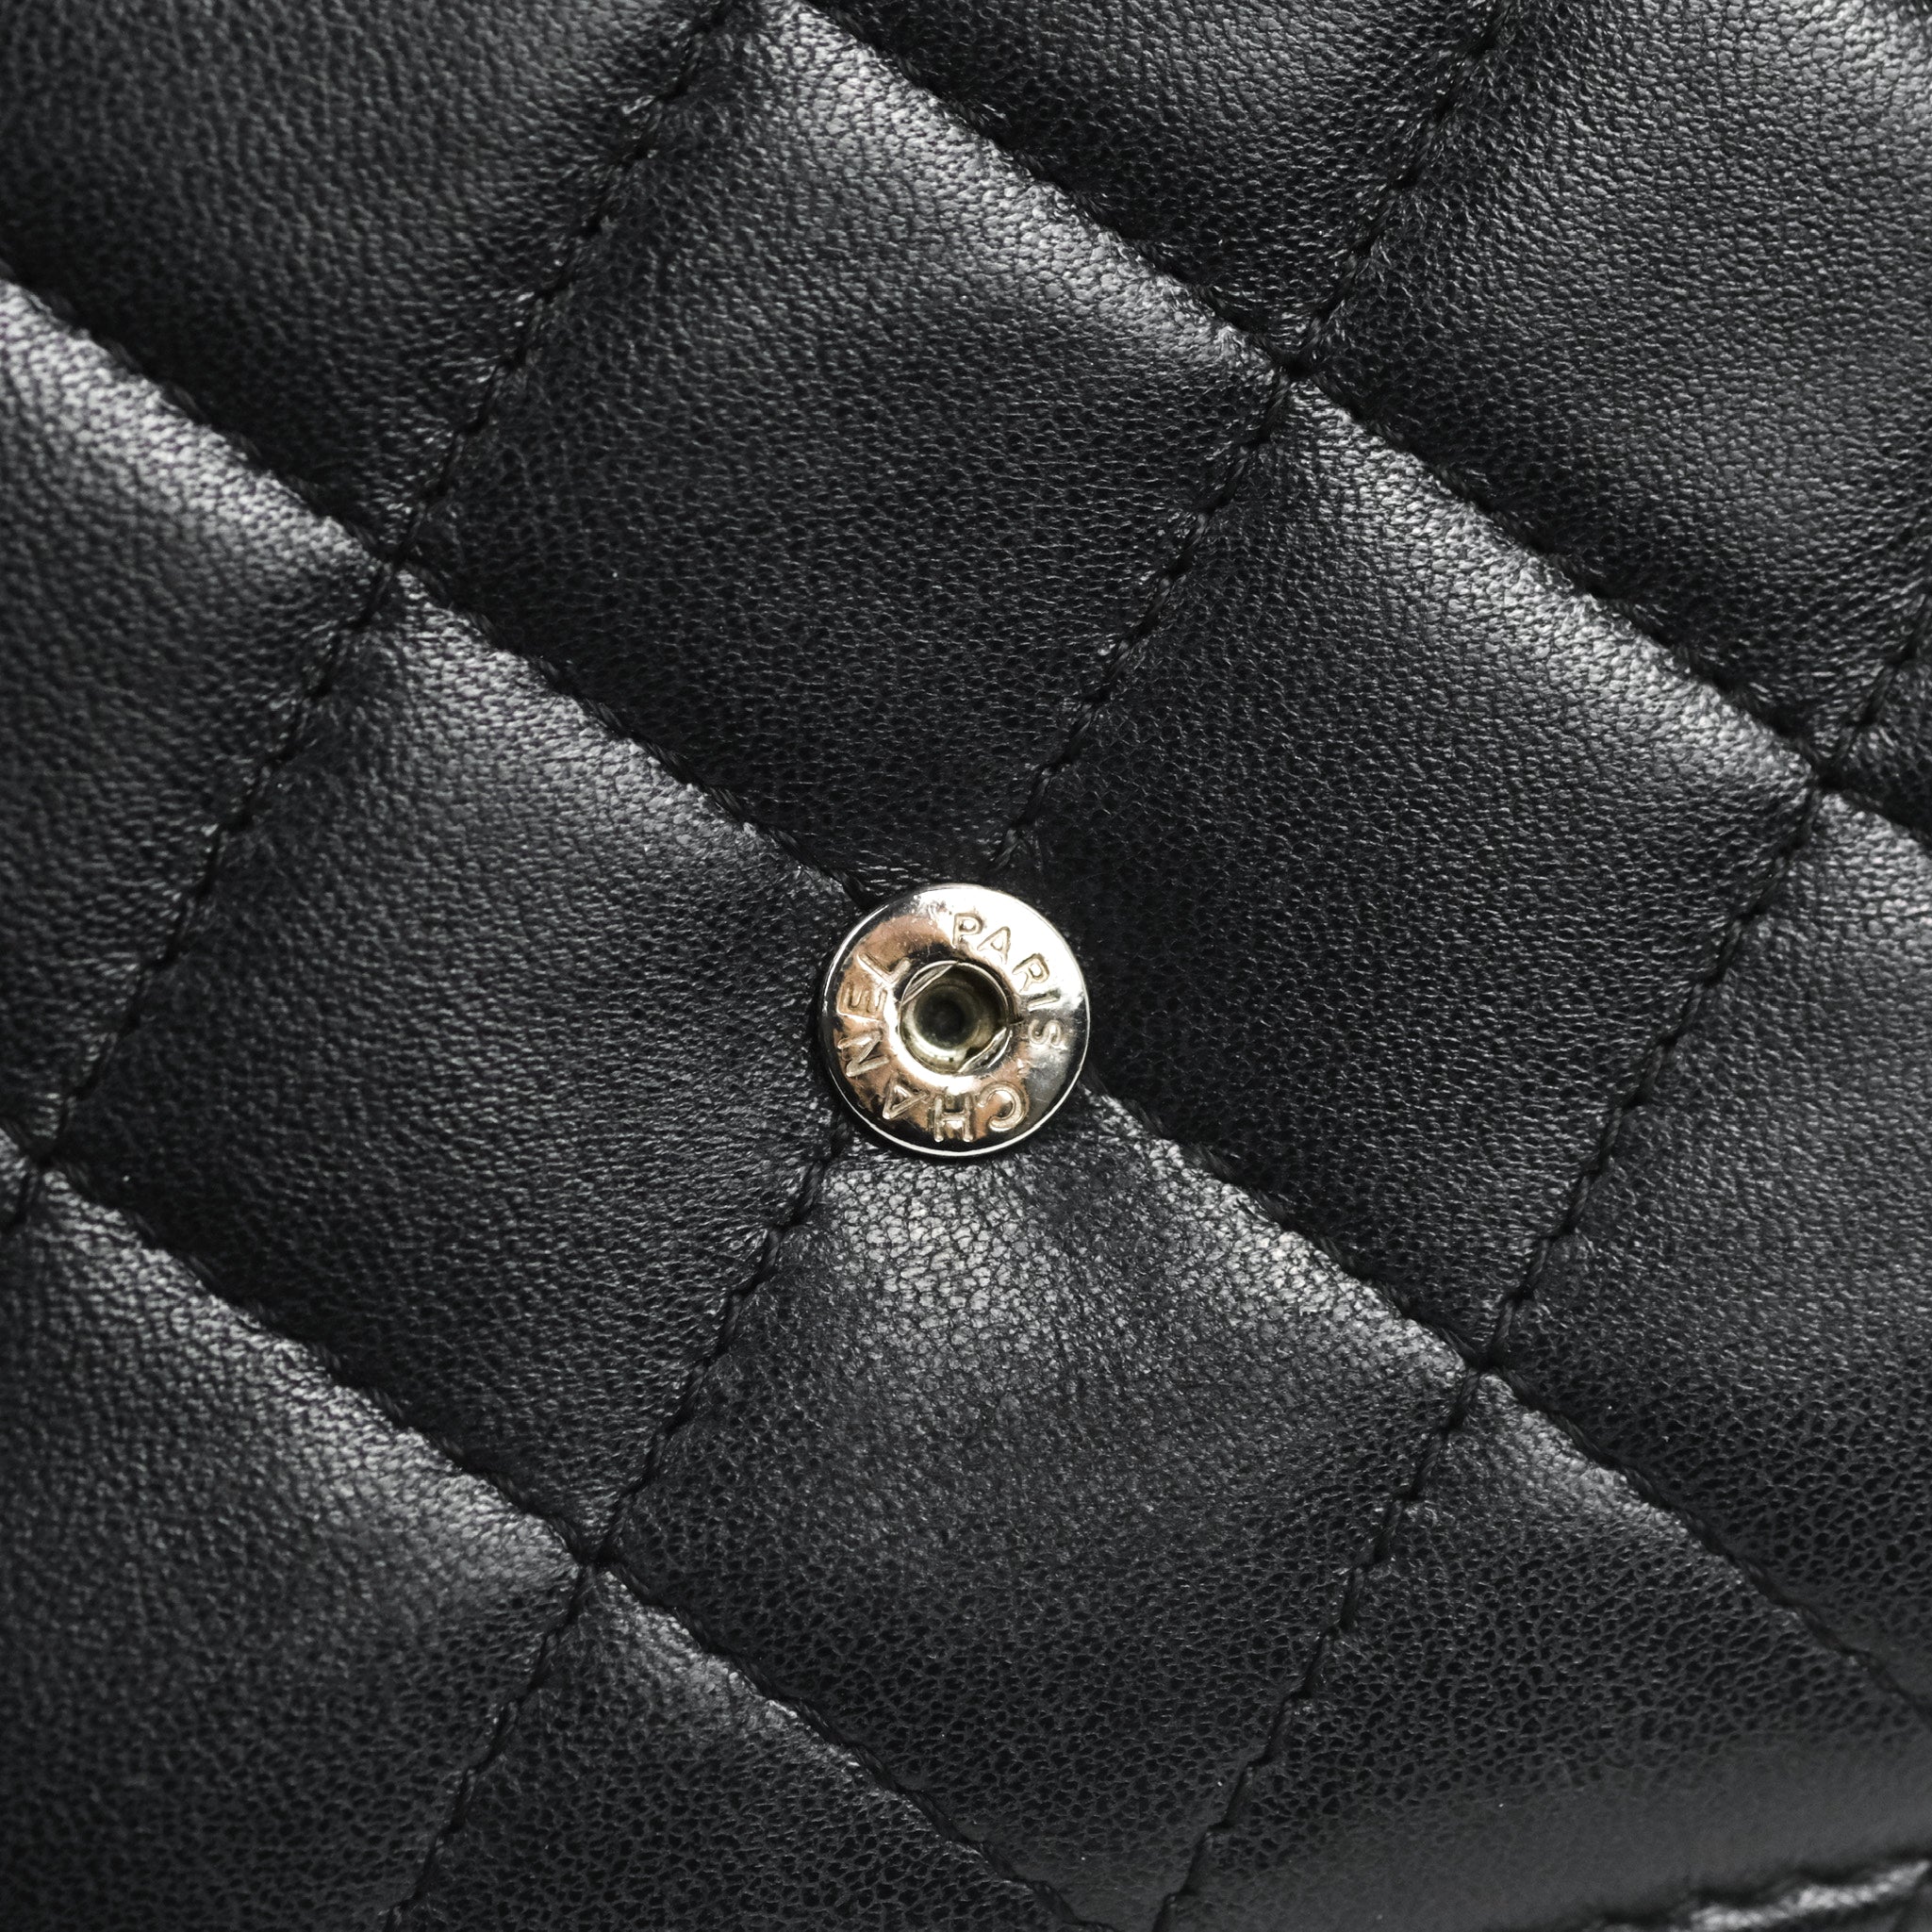 Chanel Boy Wallet on Chain WOC Black Lambskin Ruthenium Hardware